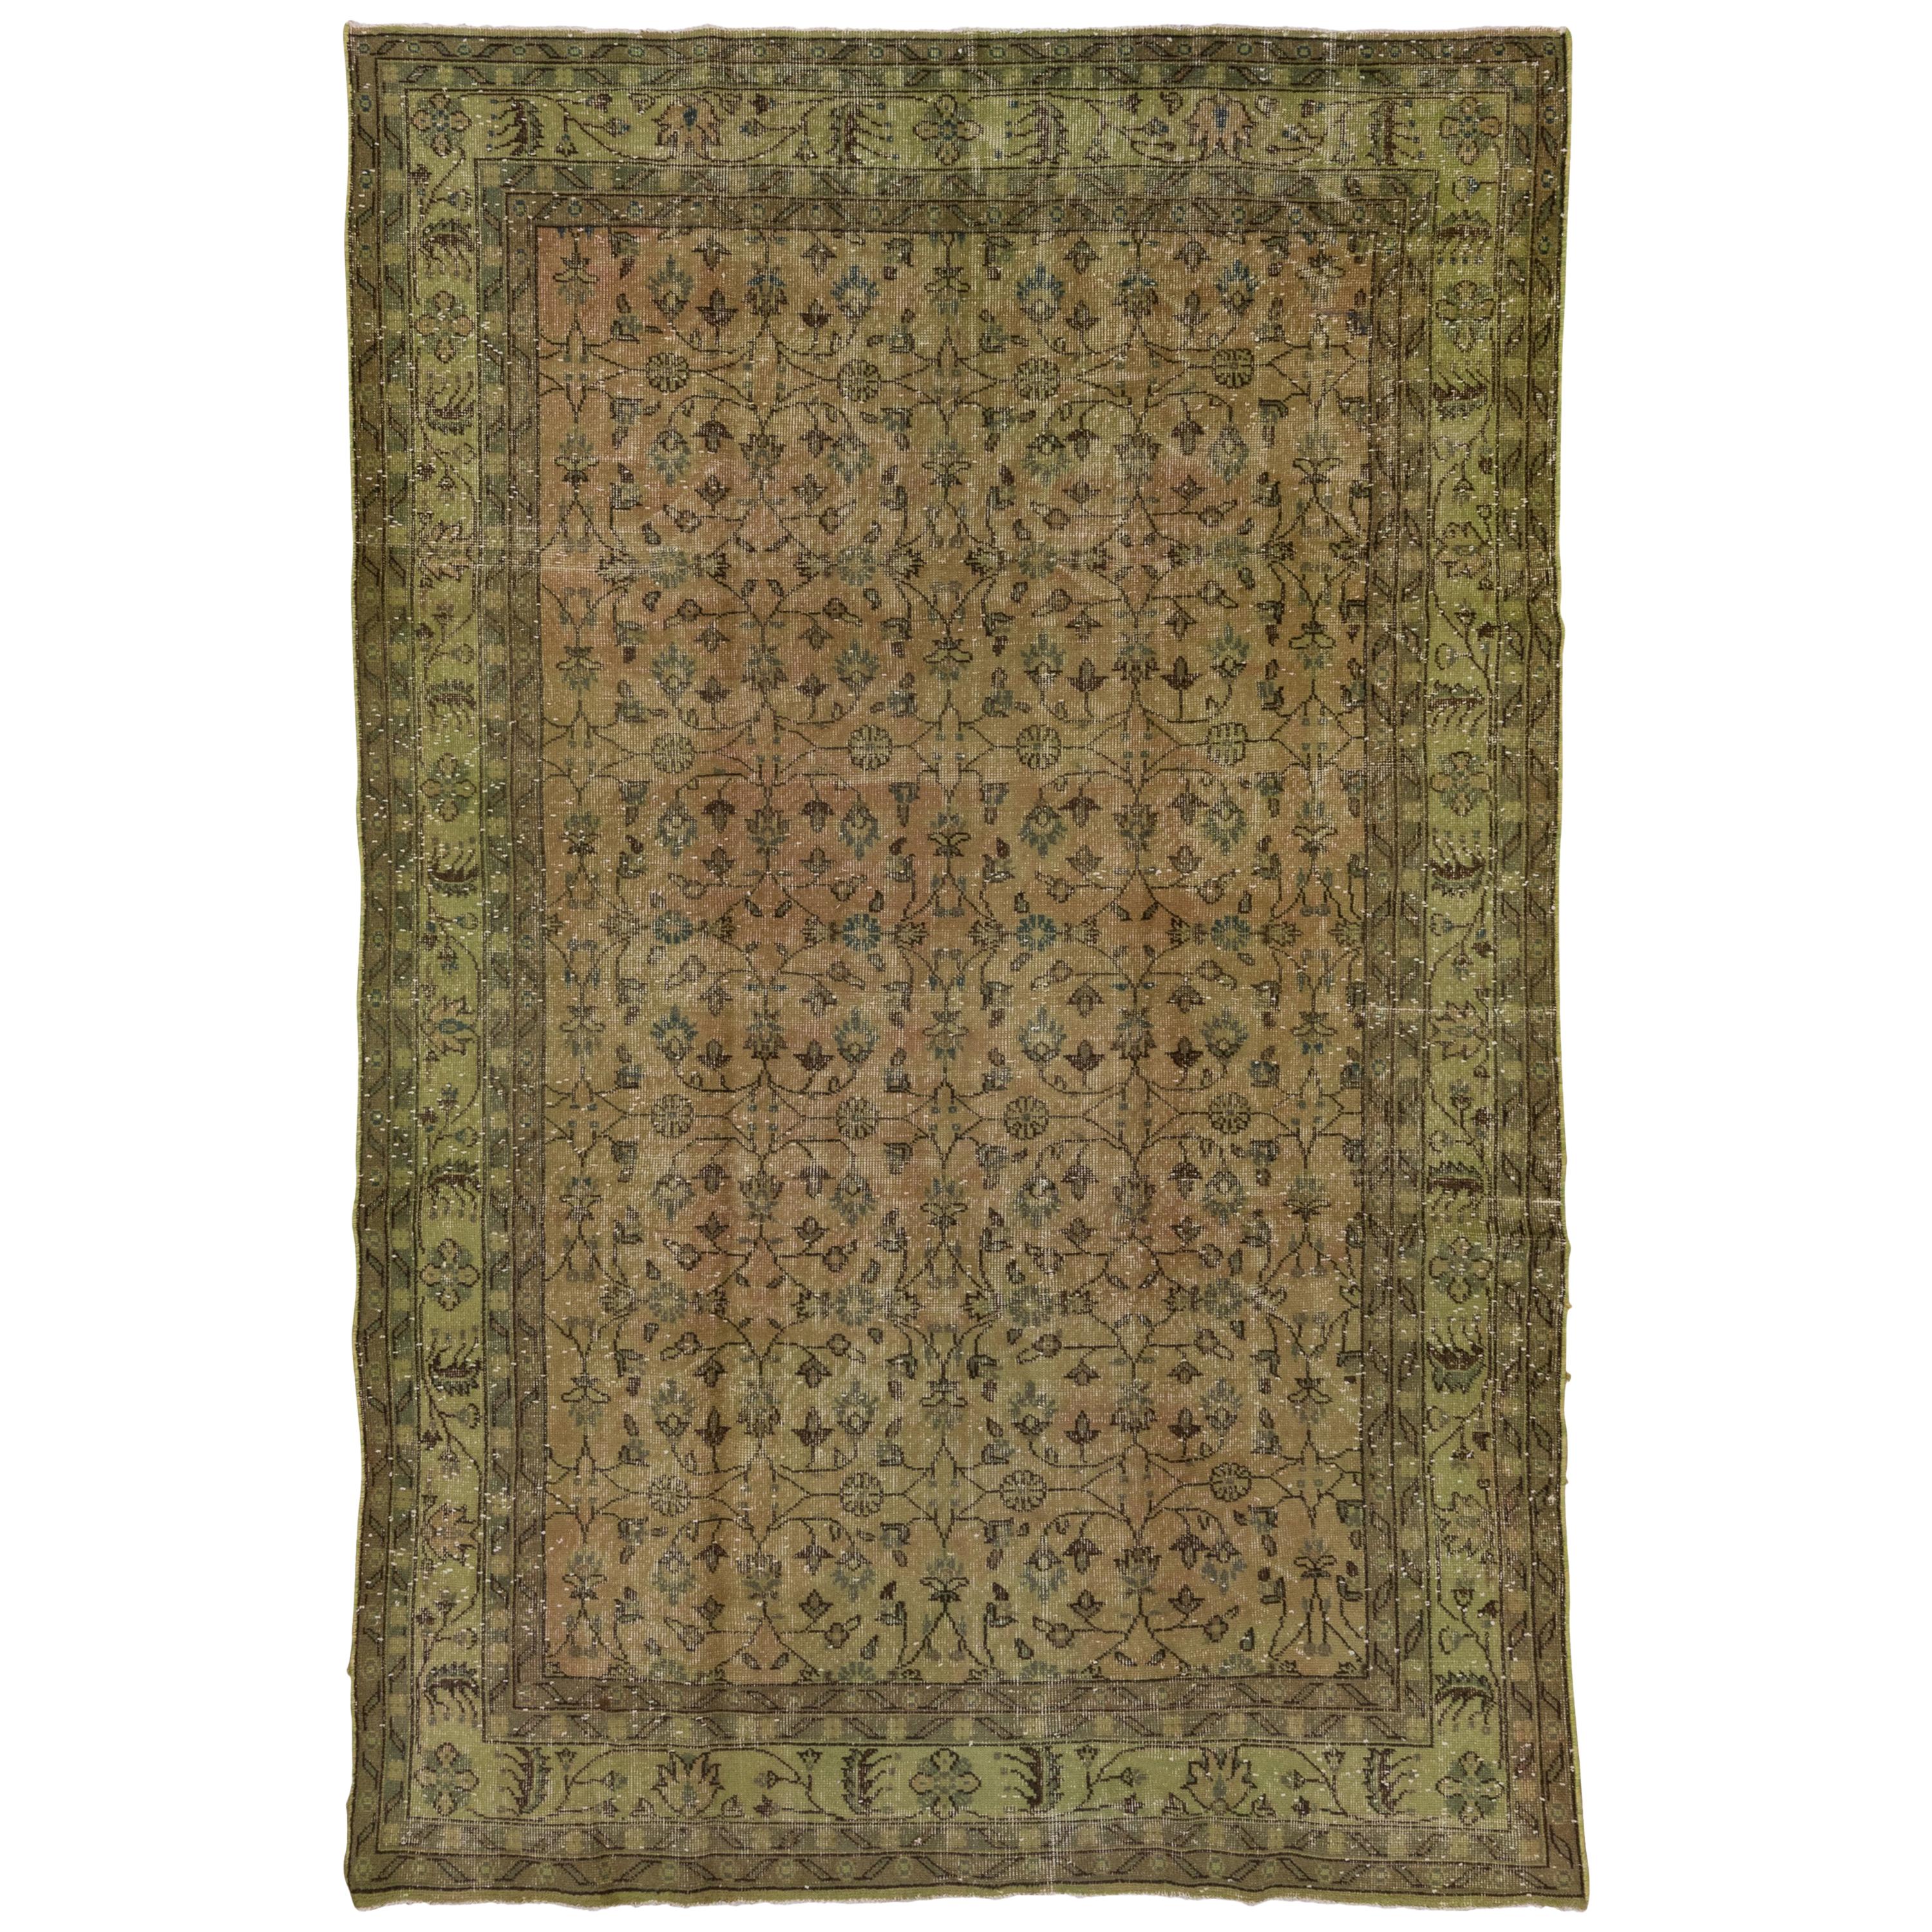 Übergefärbter Vintage-Teppich, Grüntöne